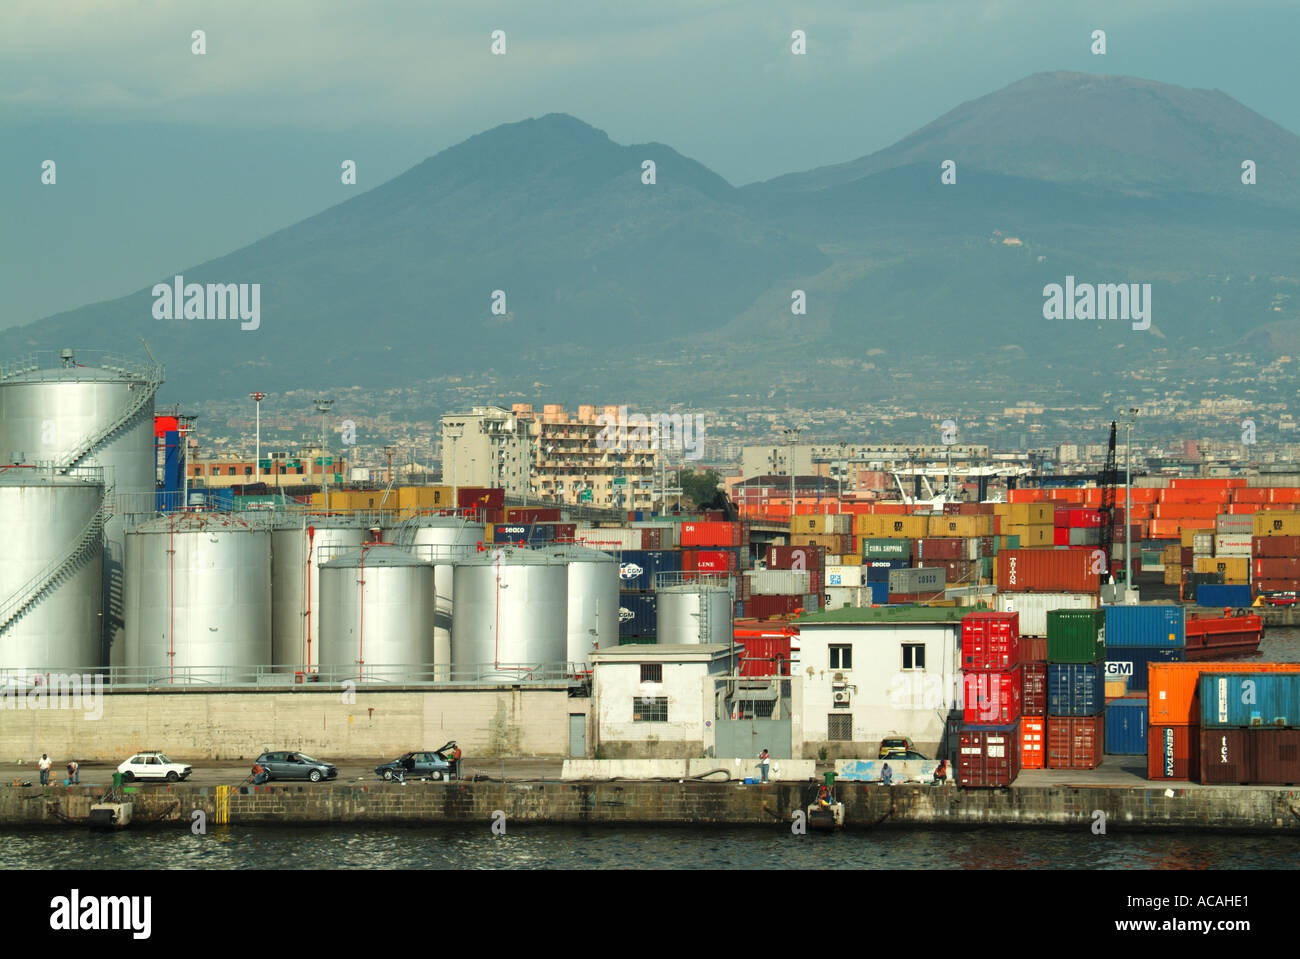 Napoli paesaggio industriale portuale contenitori stoccaggio serbatoi e gru oltre la nascita di spedizione vuota con persone che pescano dal molo accanto auto parcheggiate Foto Stock